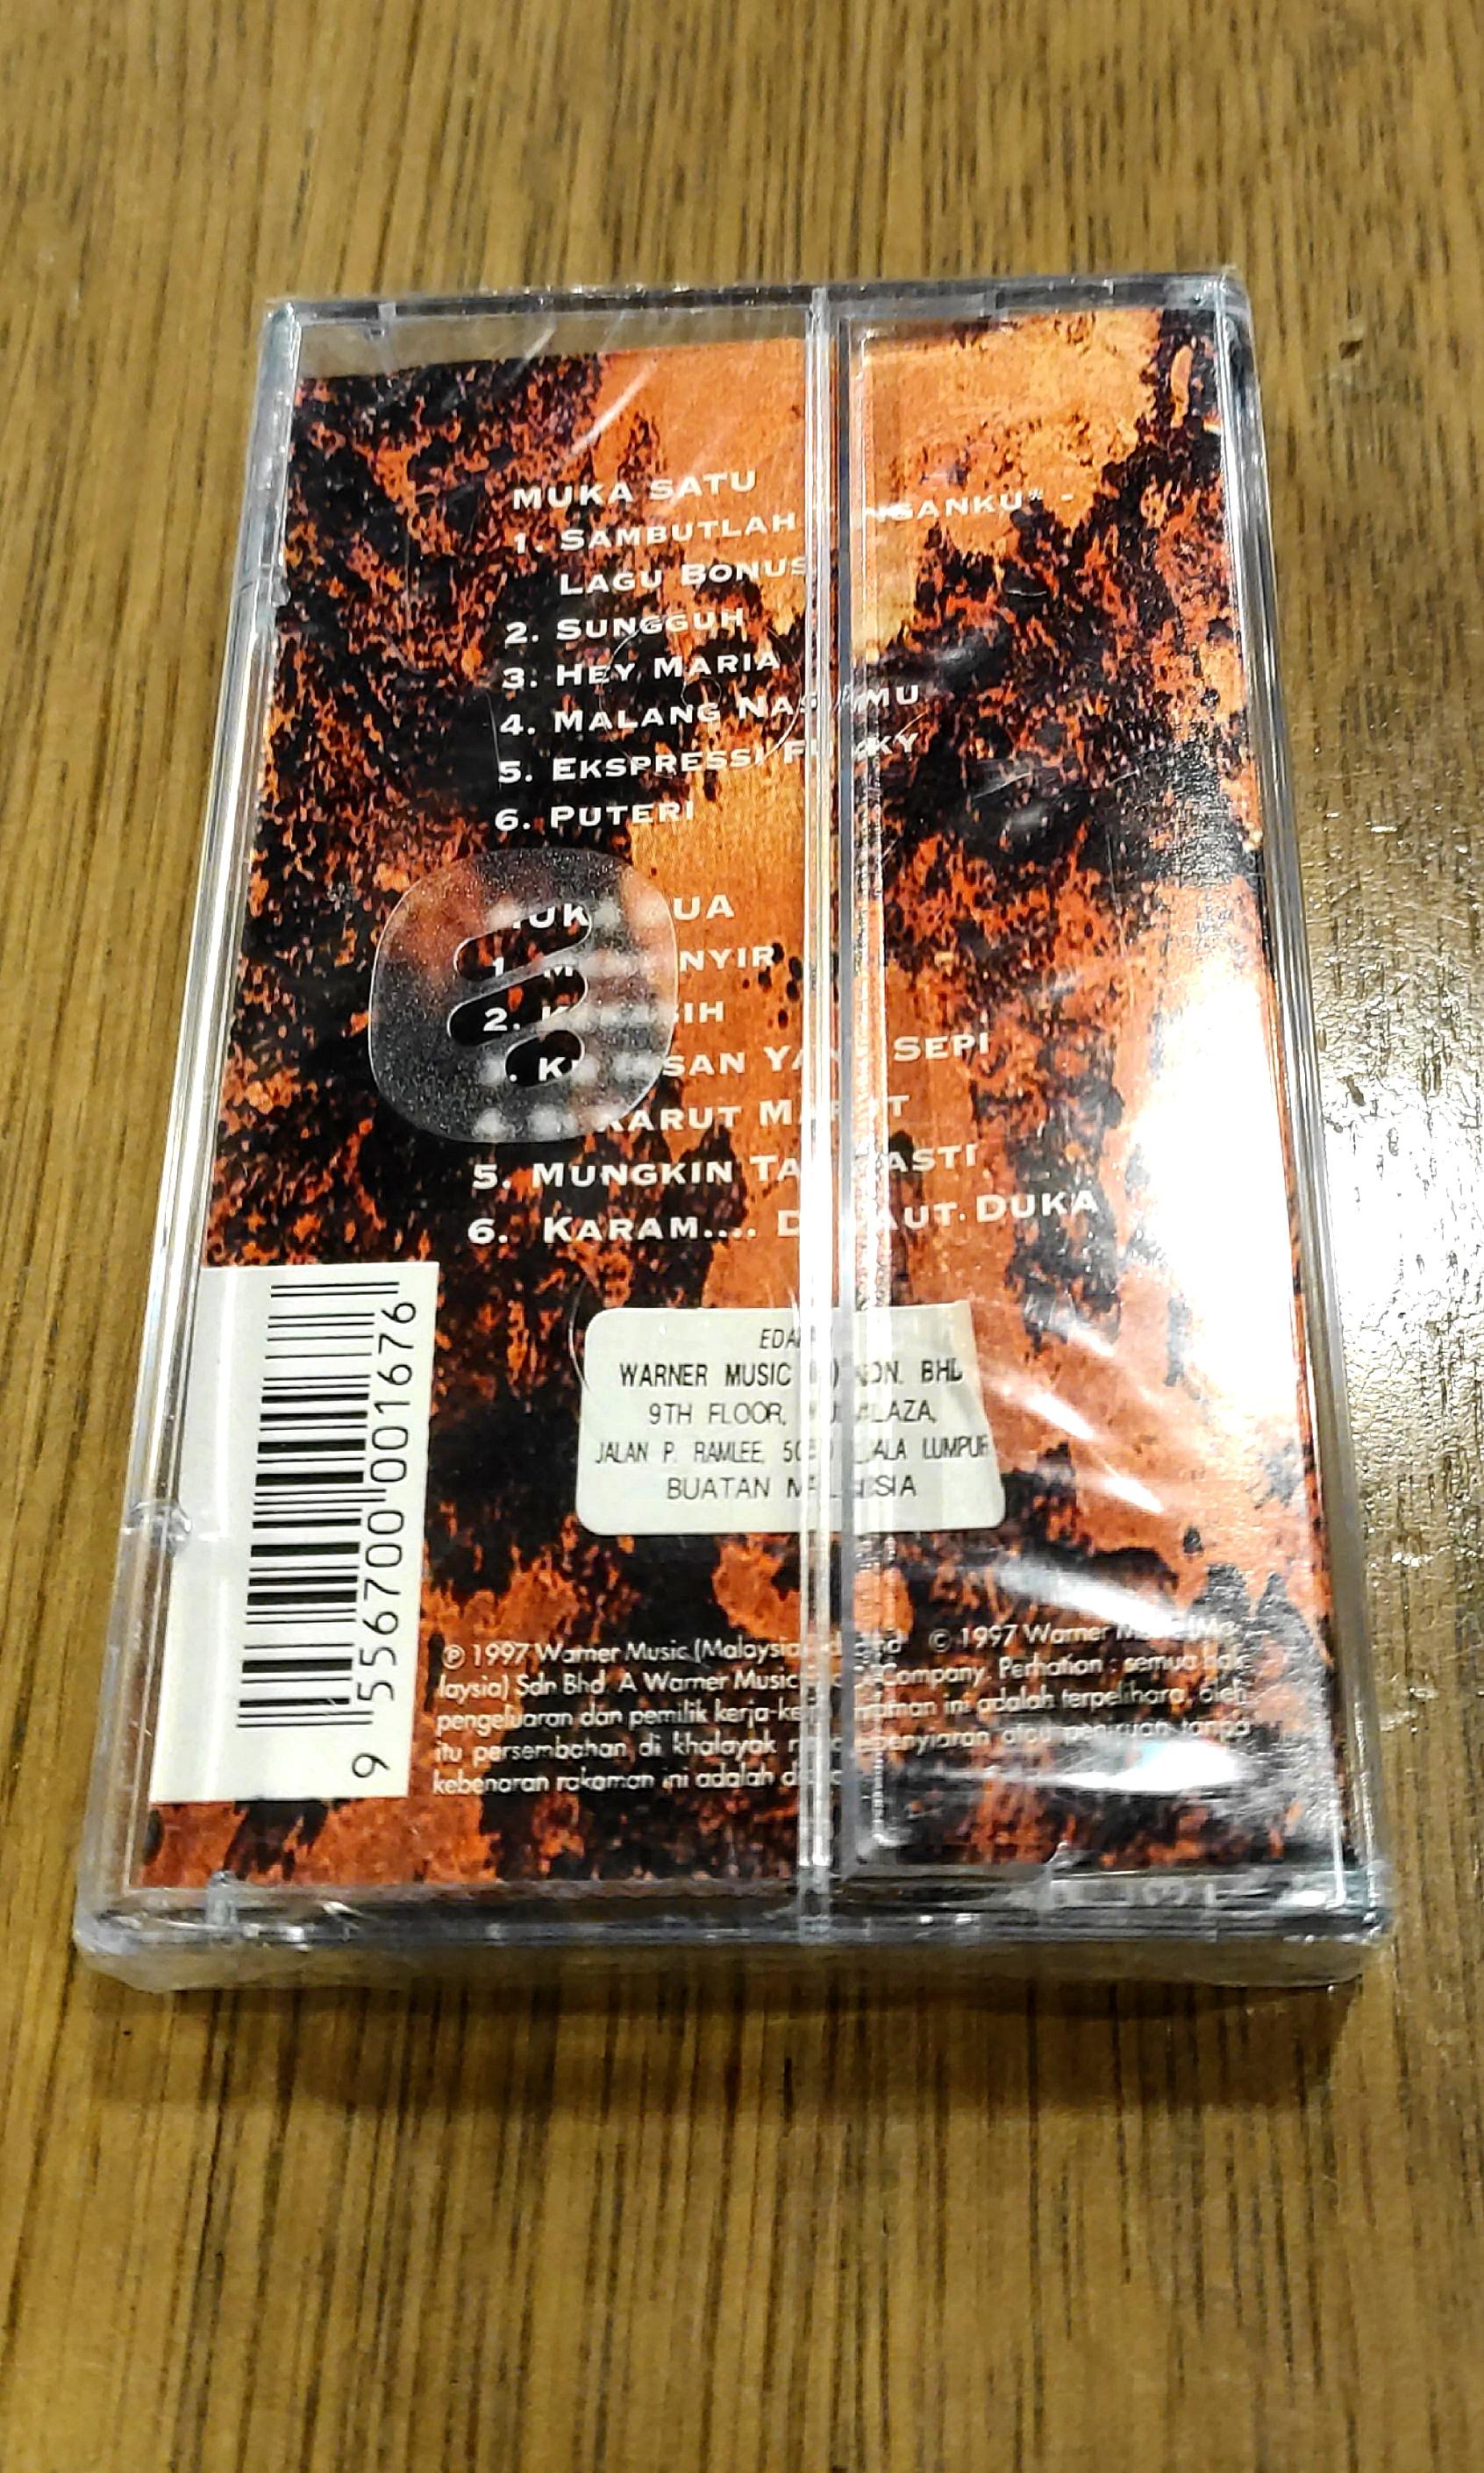 Iklim Sambutlah Tanganku Sealed Tape 1997 Music Media Cd S Dvd S Other Media On Carousell